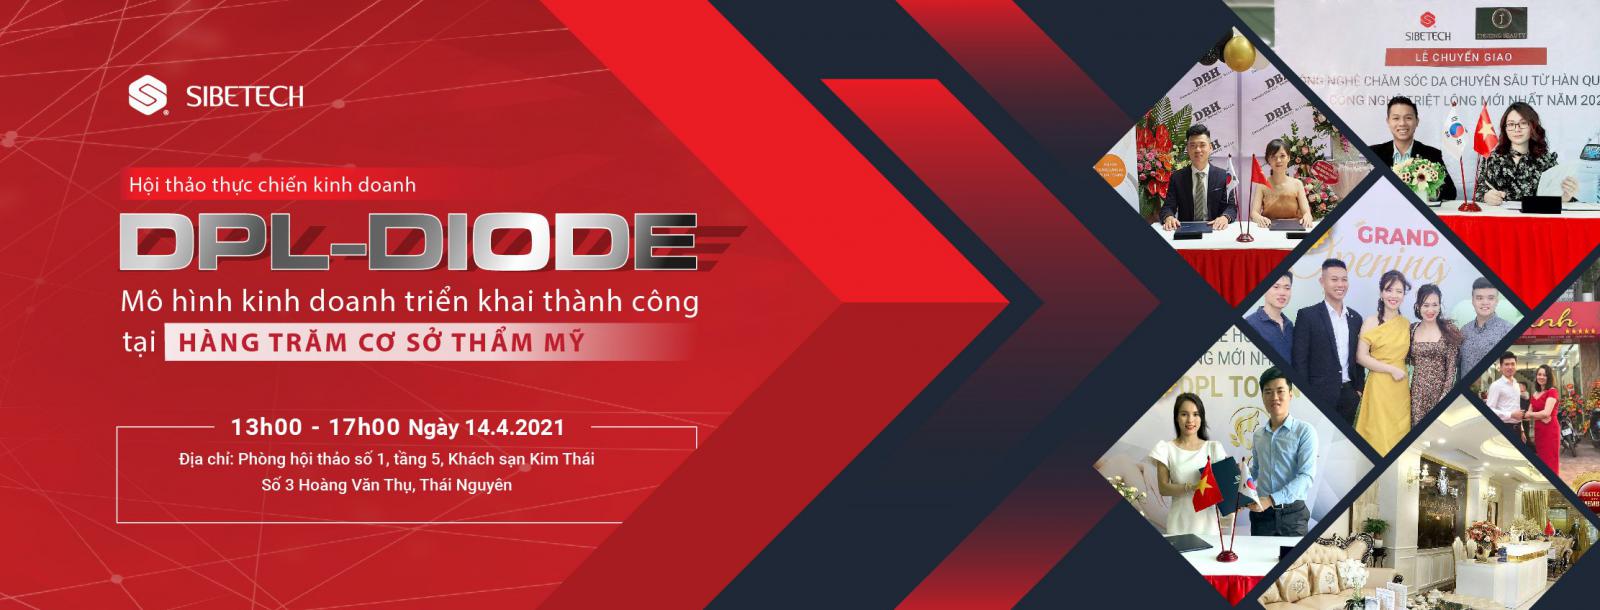 Hội thảo thưc chiến Kinh doanh DPL DIODE- mô hình kinh doanh triển khai thành công tại hàng trăm cơ sở thẩm mỹ tại Thái Nguyên